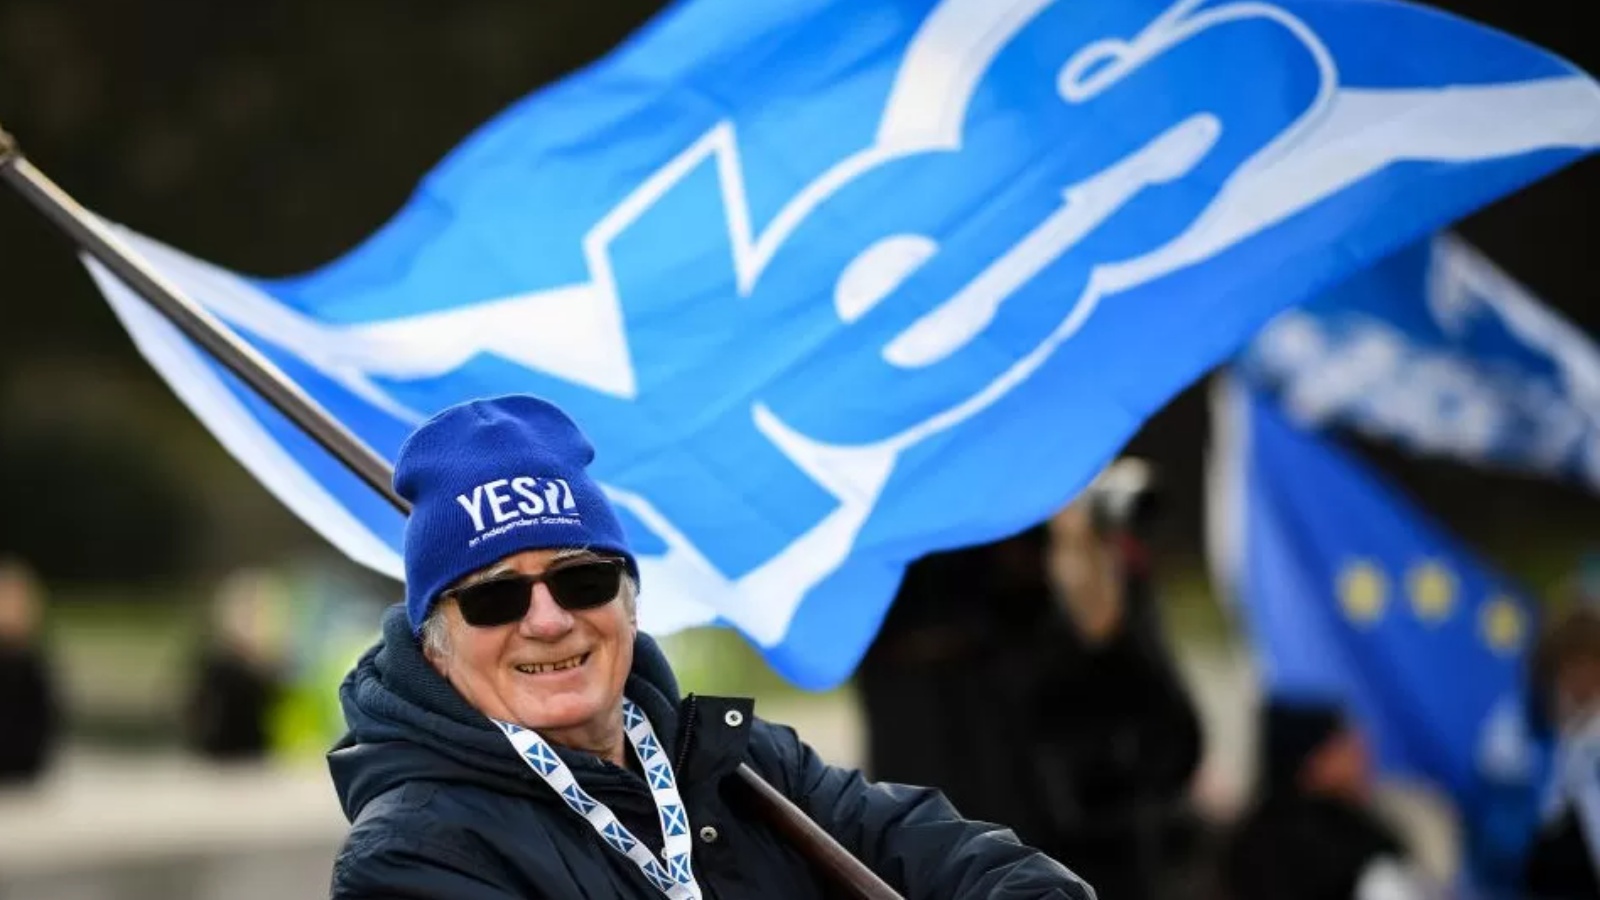 انطلاق حملات في مختلف أنحاء اسكتلندا من أجل استفتاء الاستقلال 